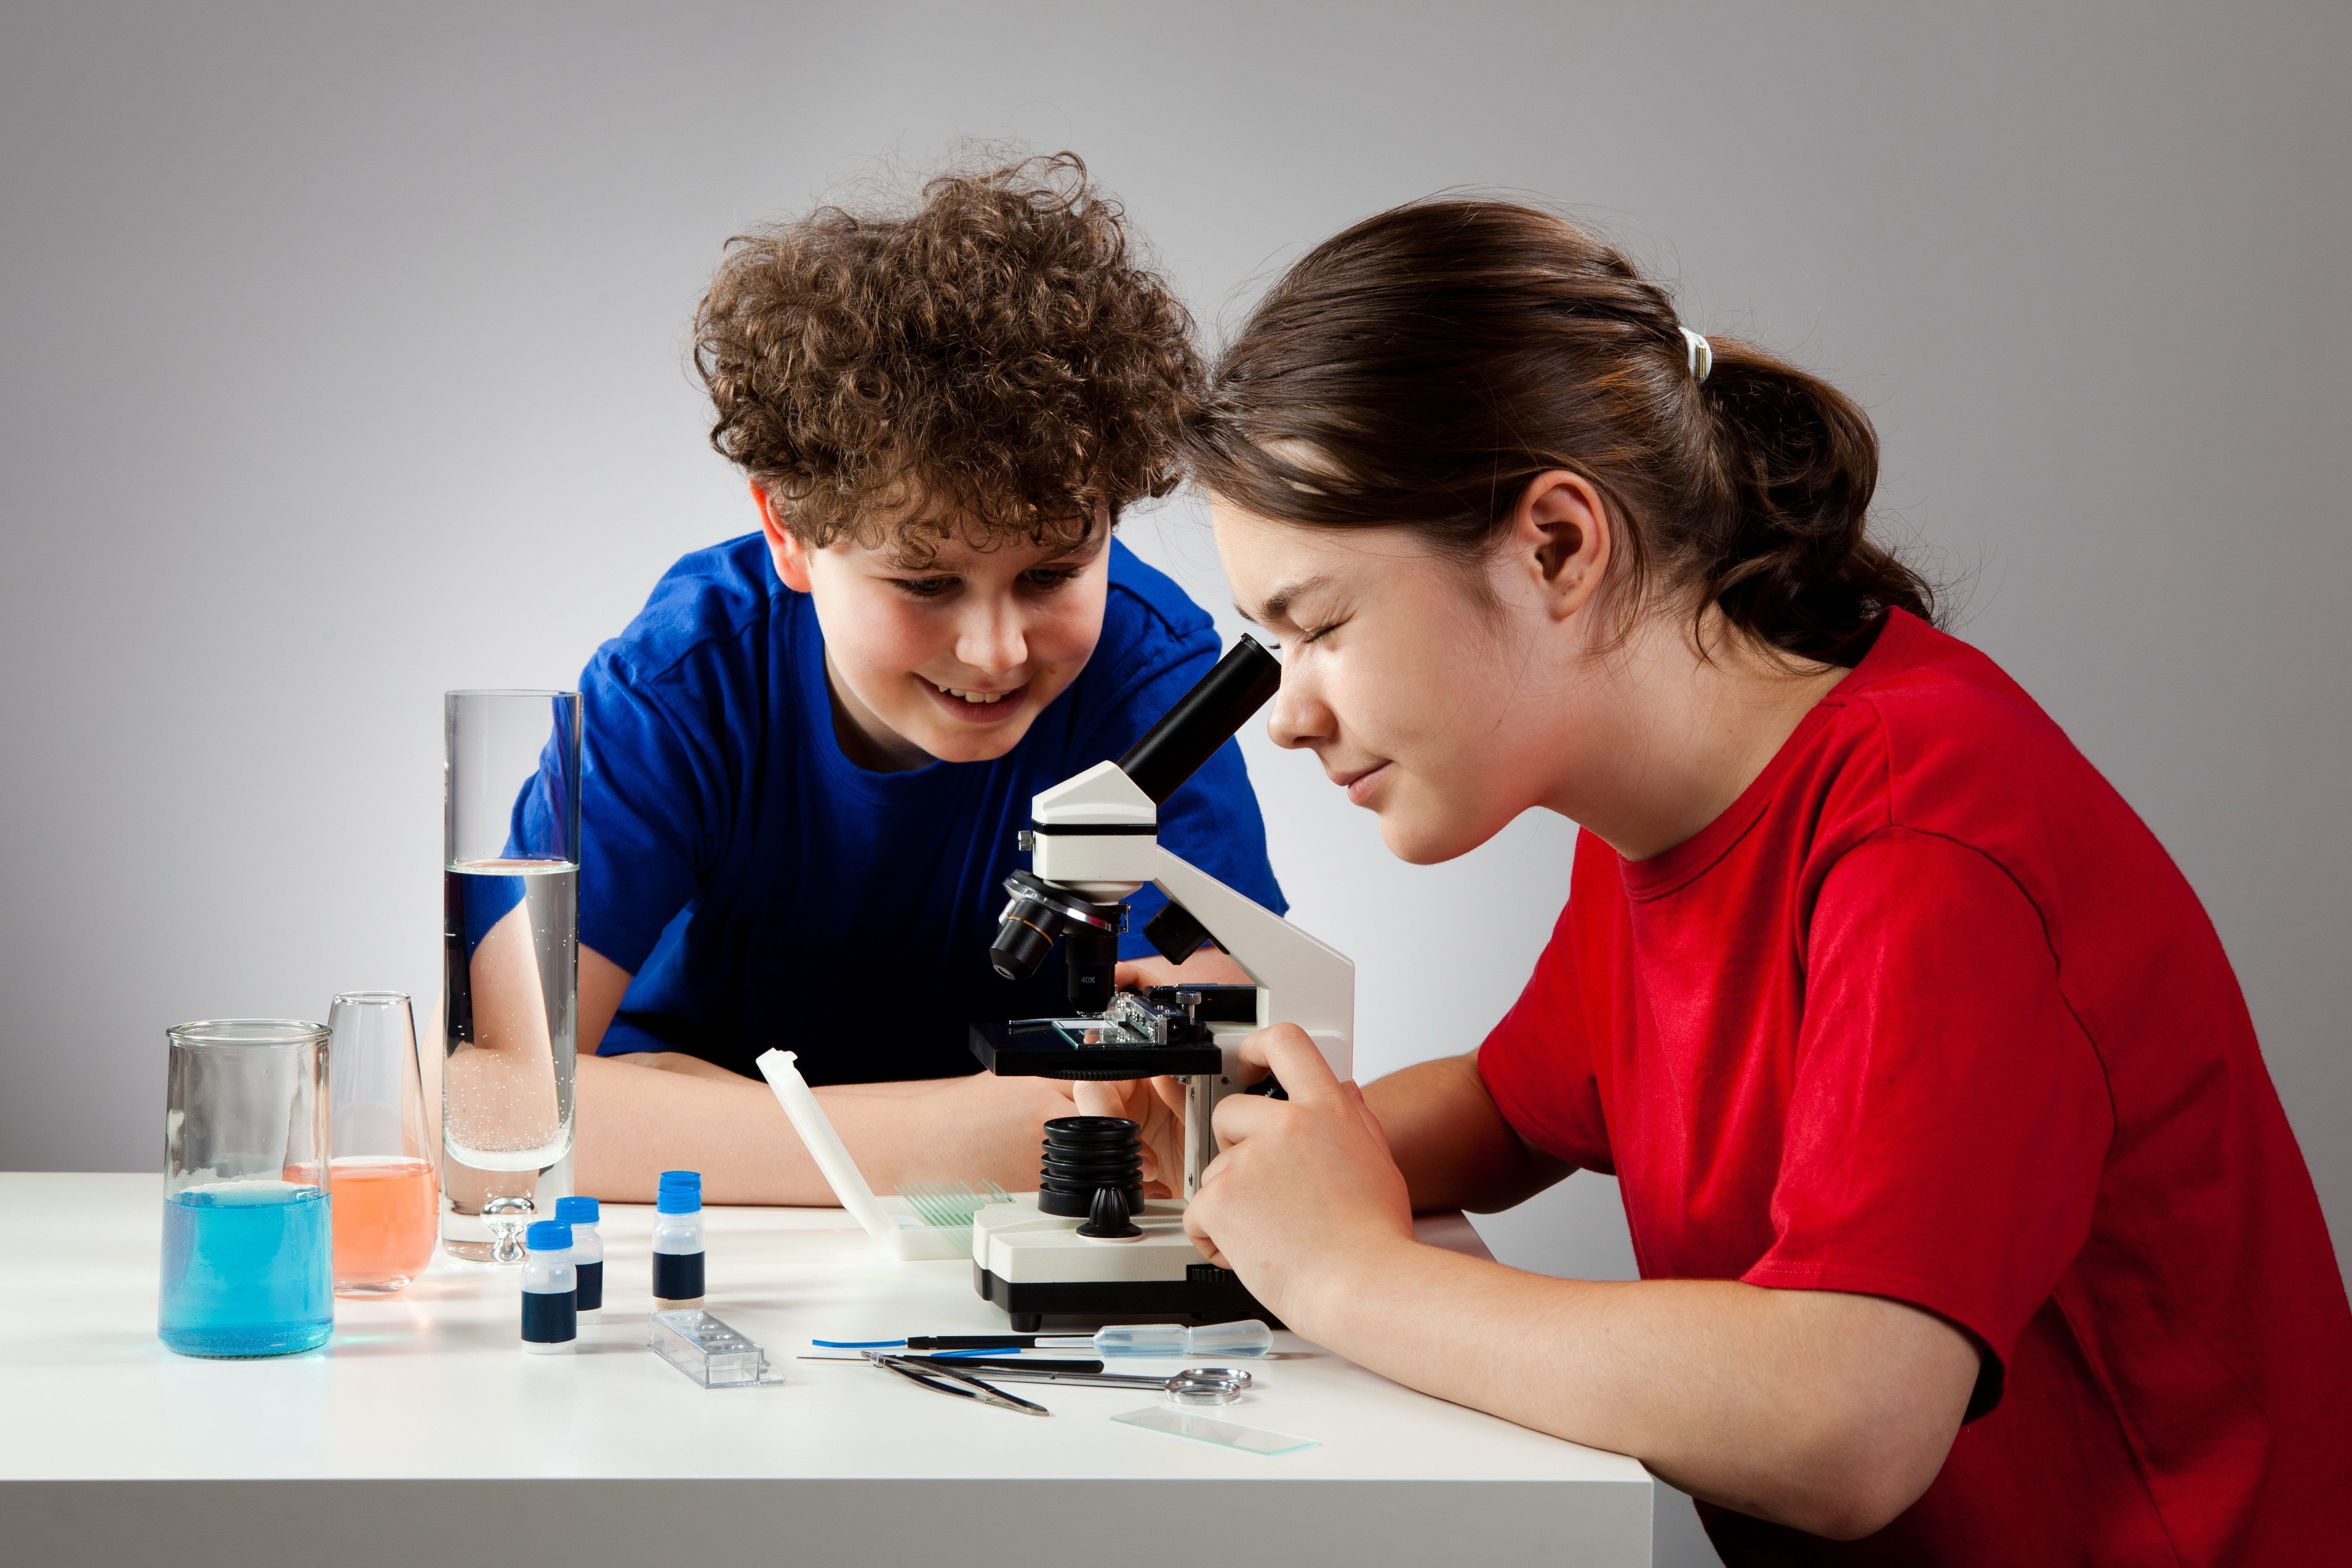 Les meilleurs microscopes pour écoliers et étudiants en 2022